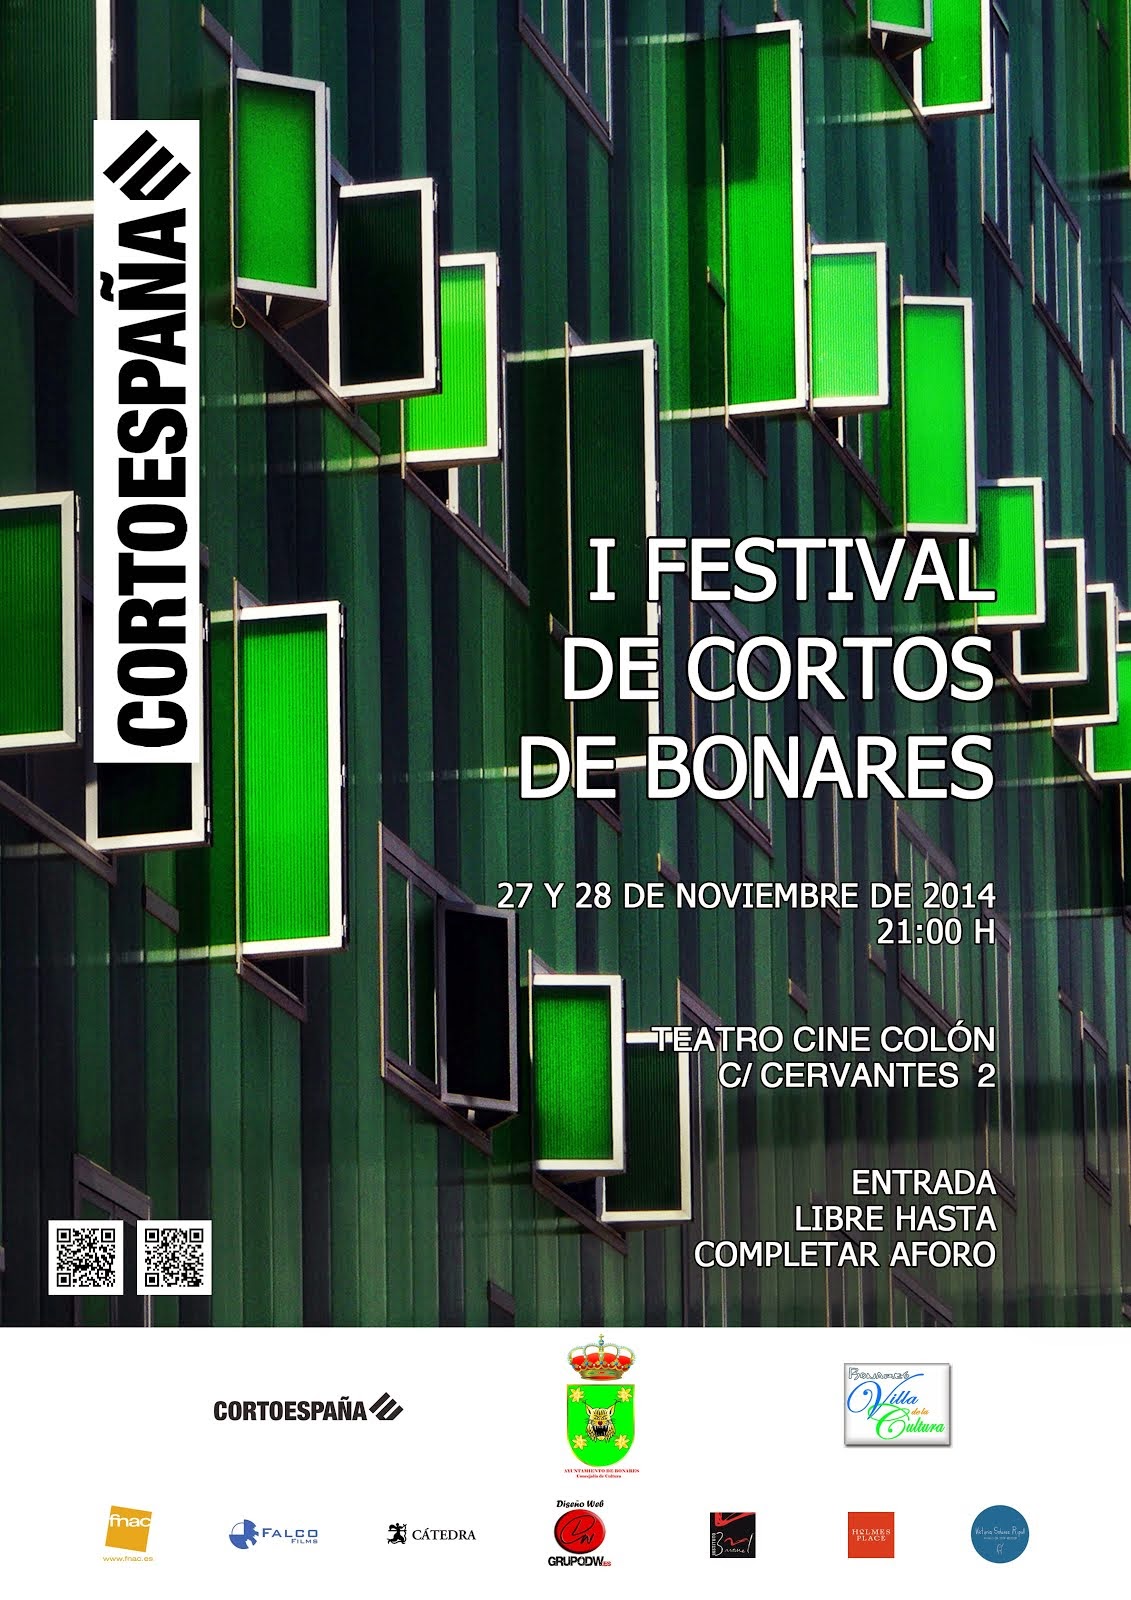 I FESTIVAL DE CORTOS DE BONARES